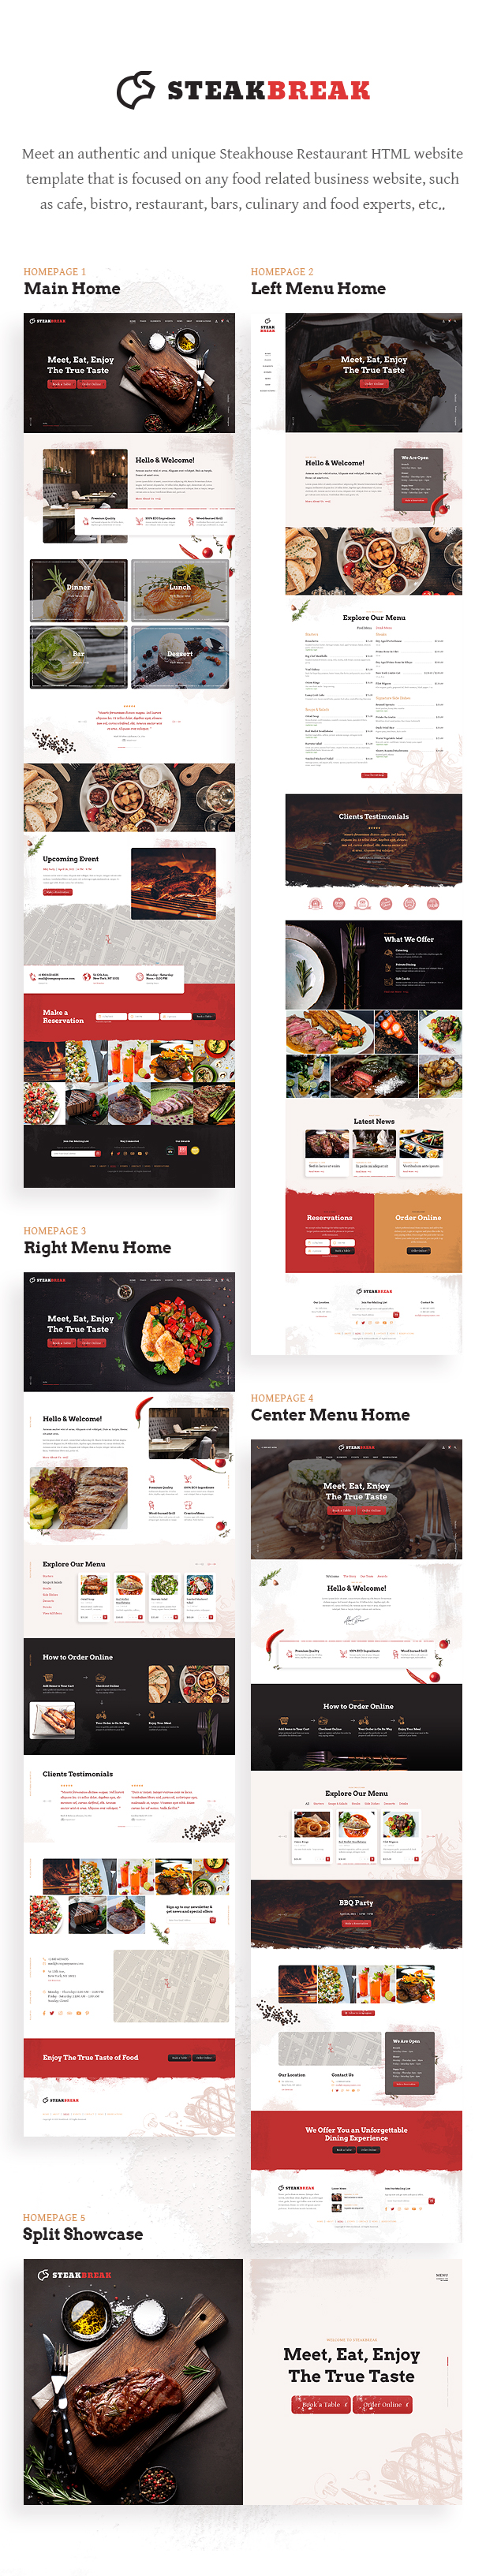 SteakBreak - Steakhouse Restaurant HTML Template - 1